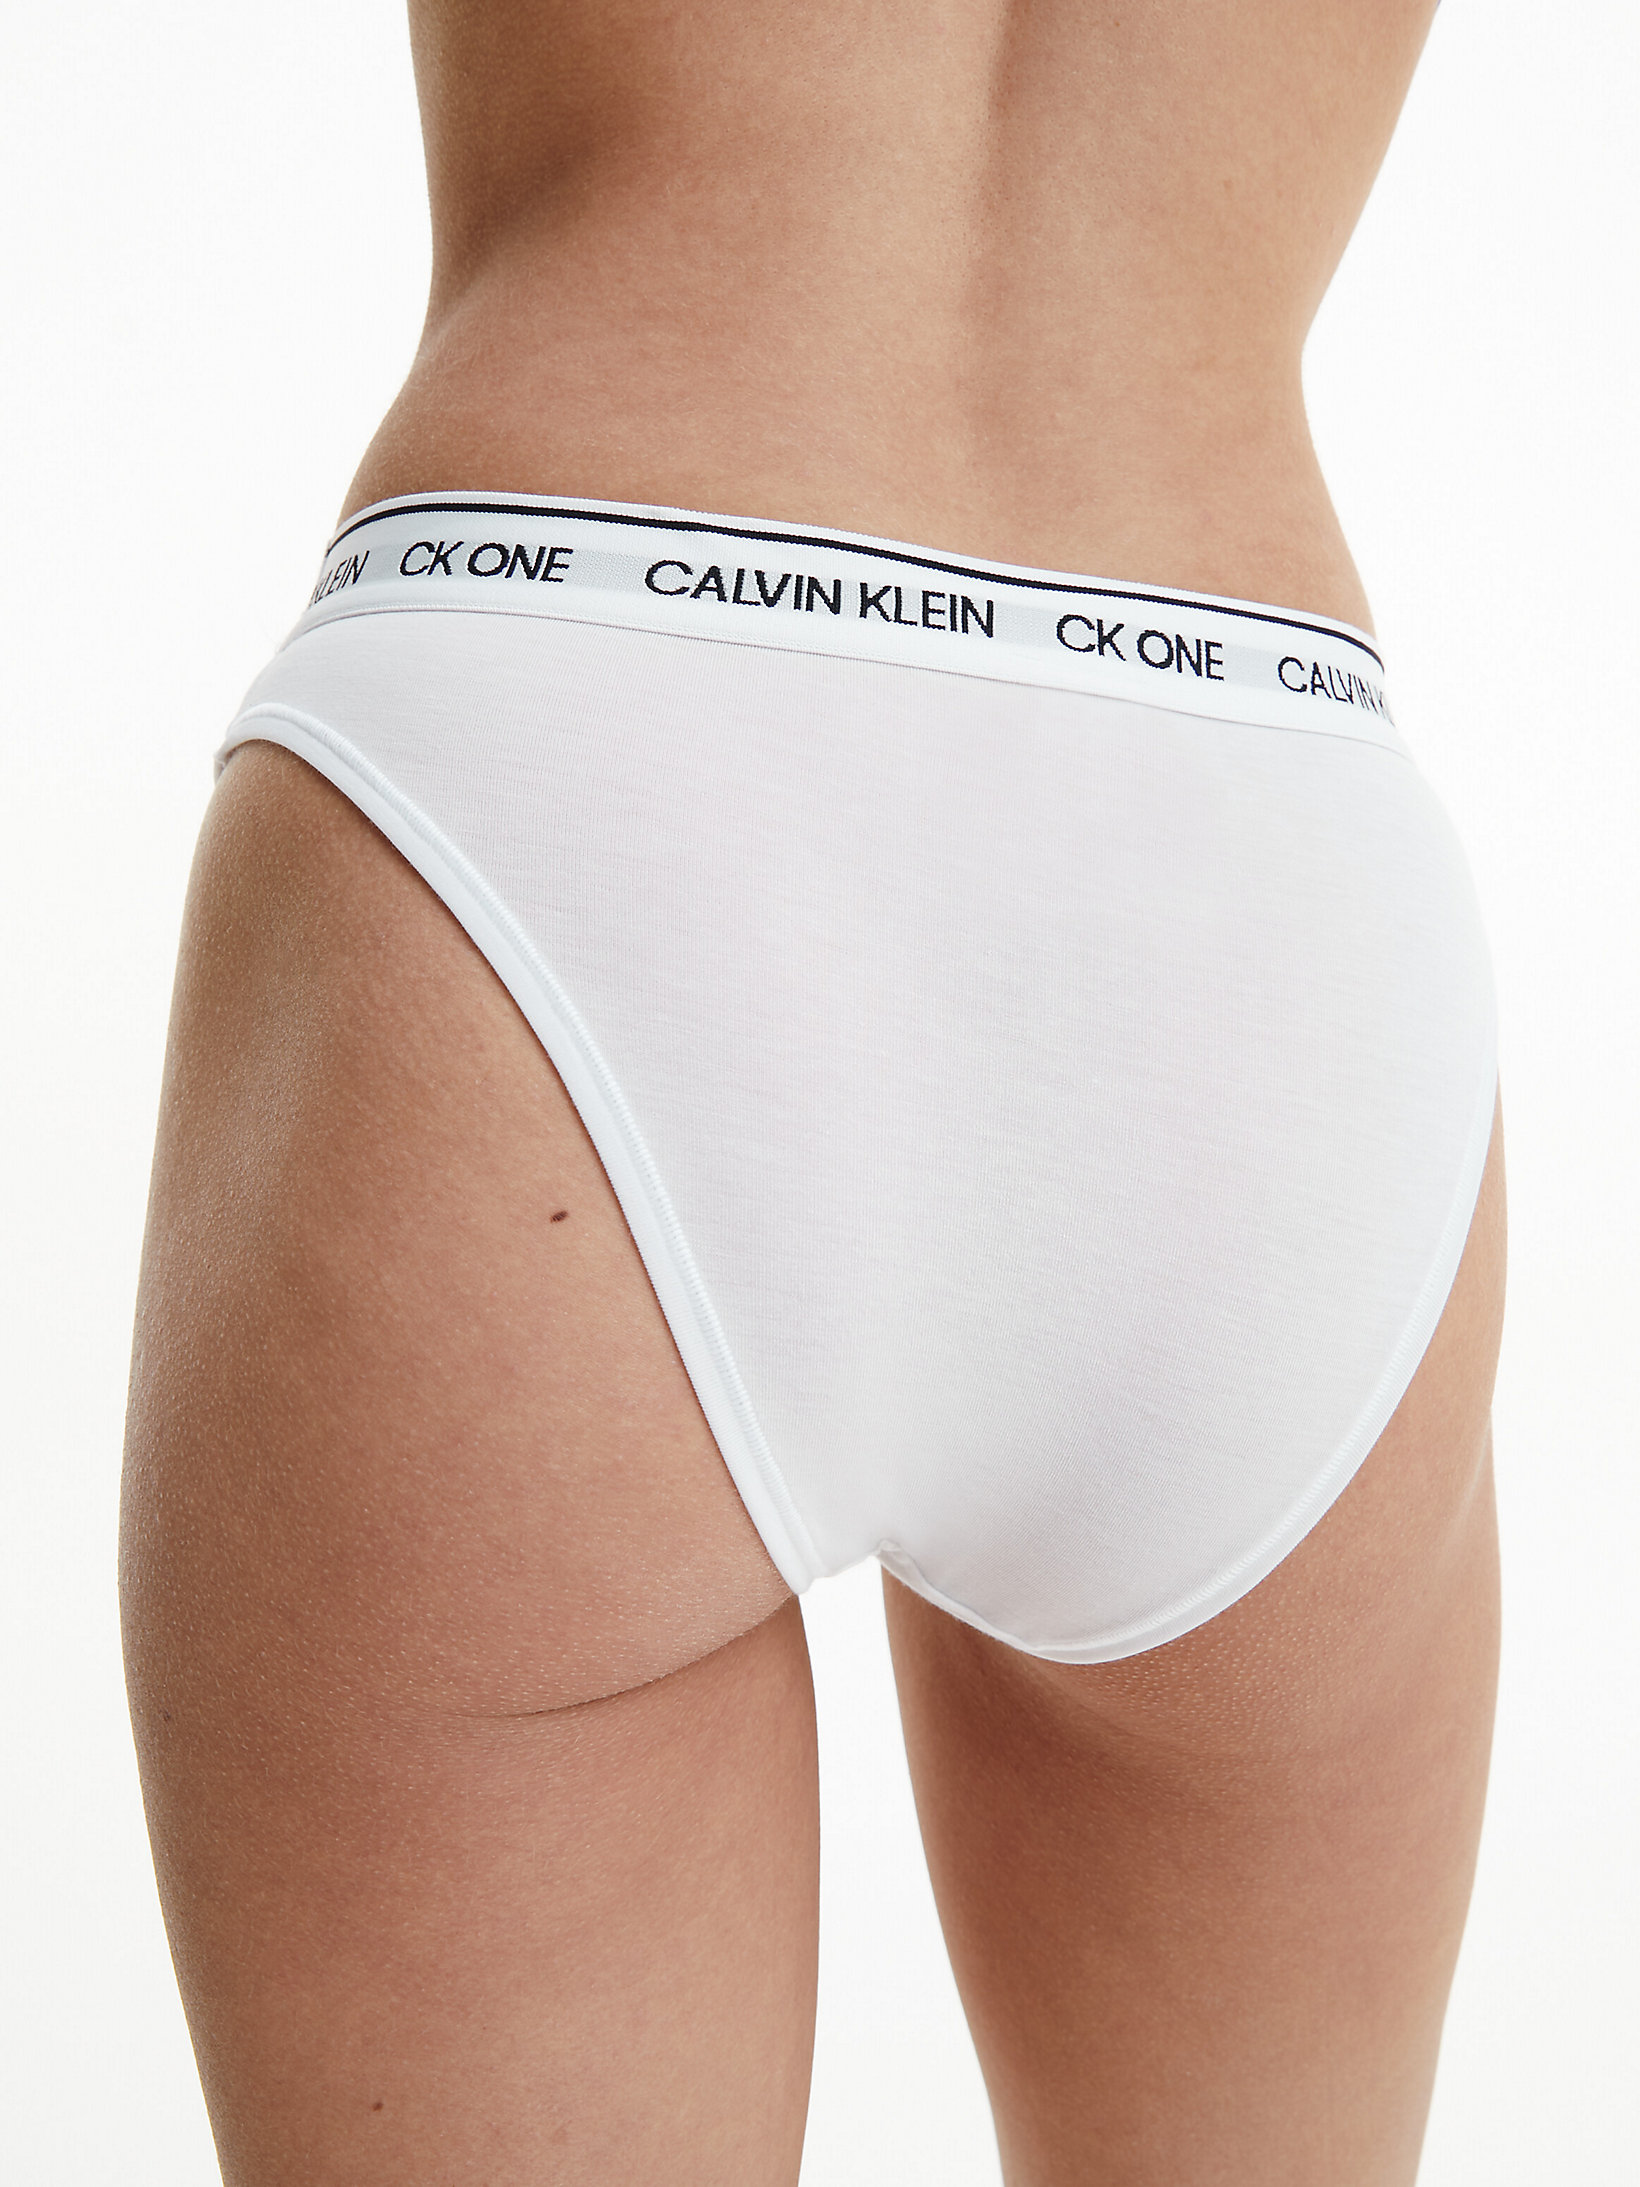 White > Танга - CK One Recycled > undefined Женщины - Calvin Klein